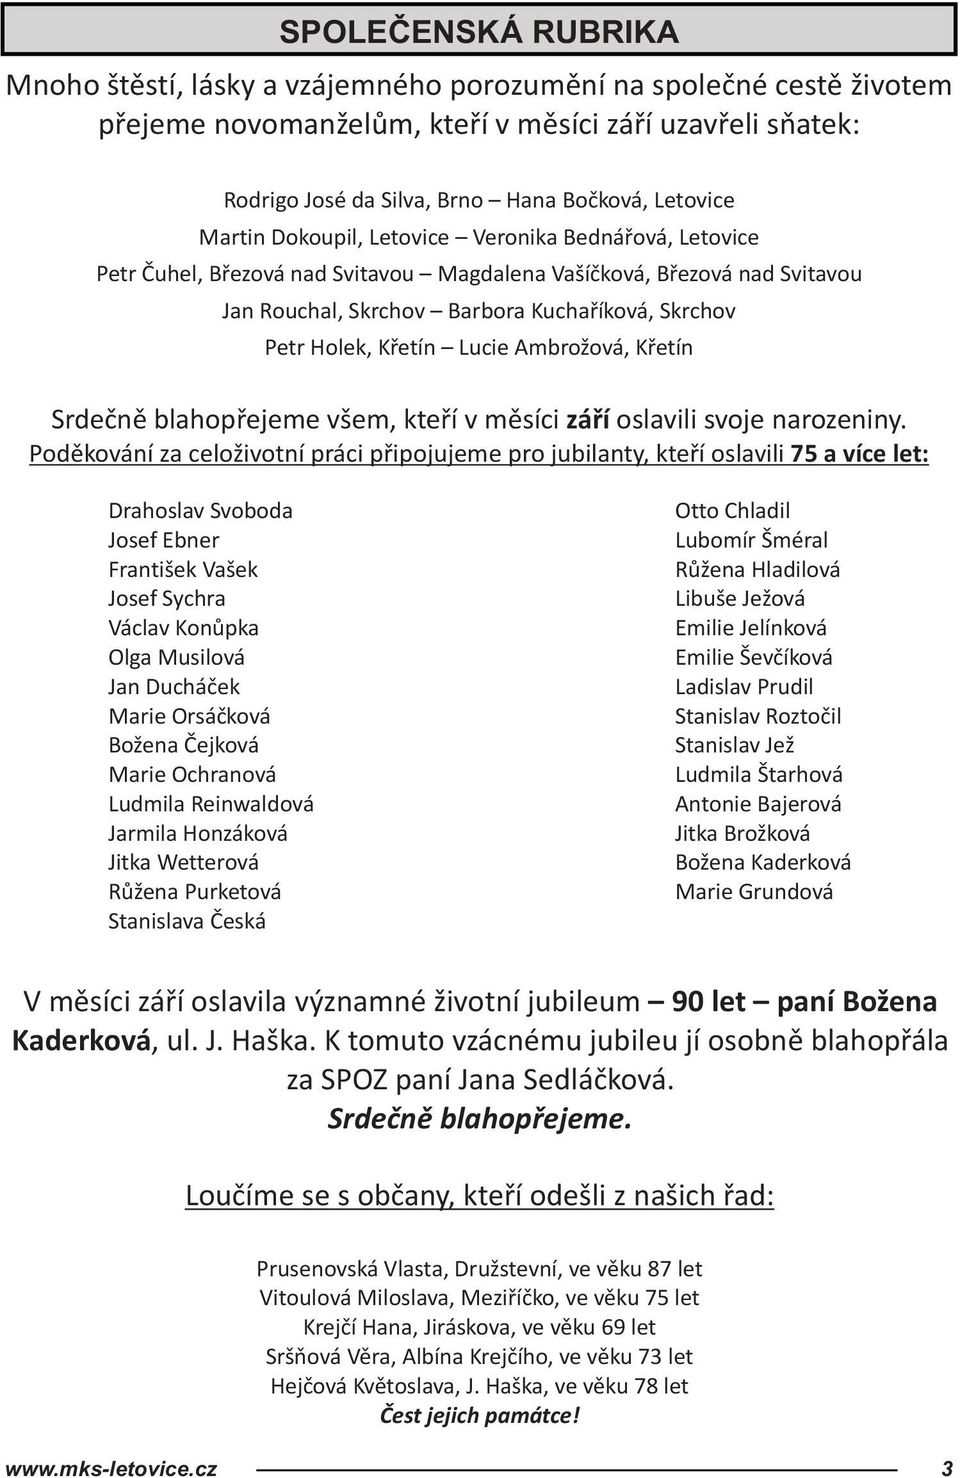 Letovický. zpravodaj - PDF Stažení zdarma